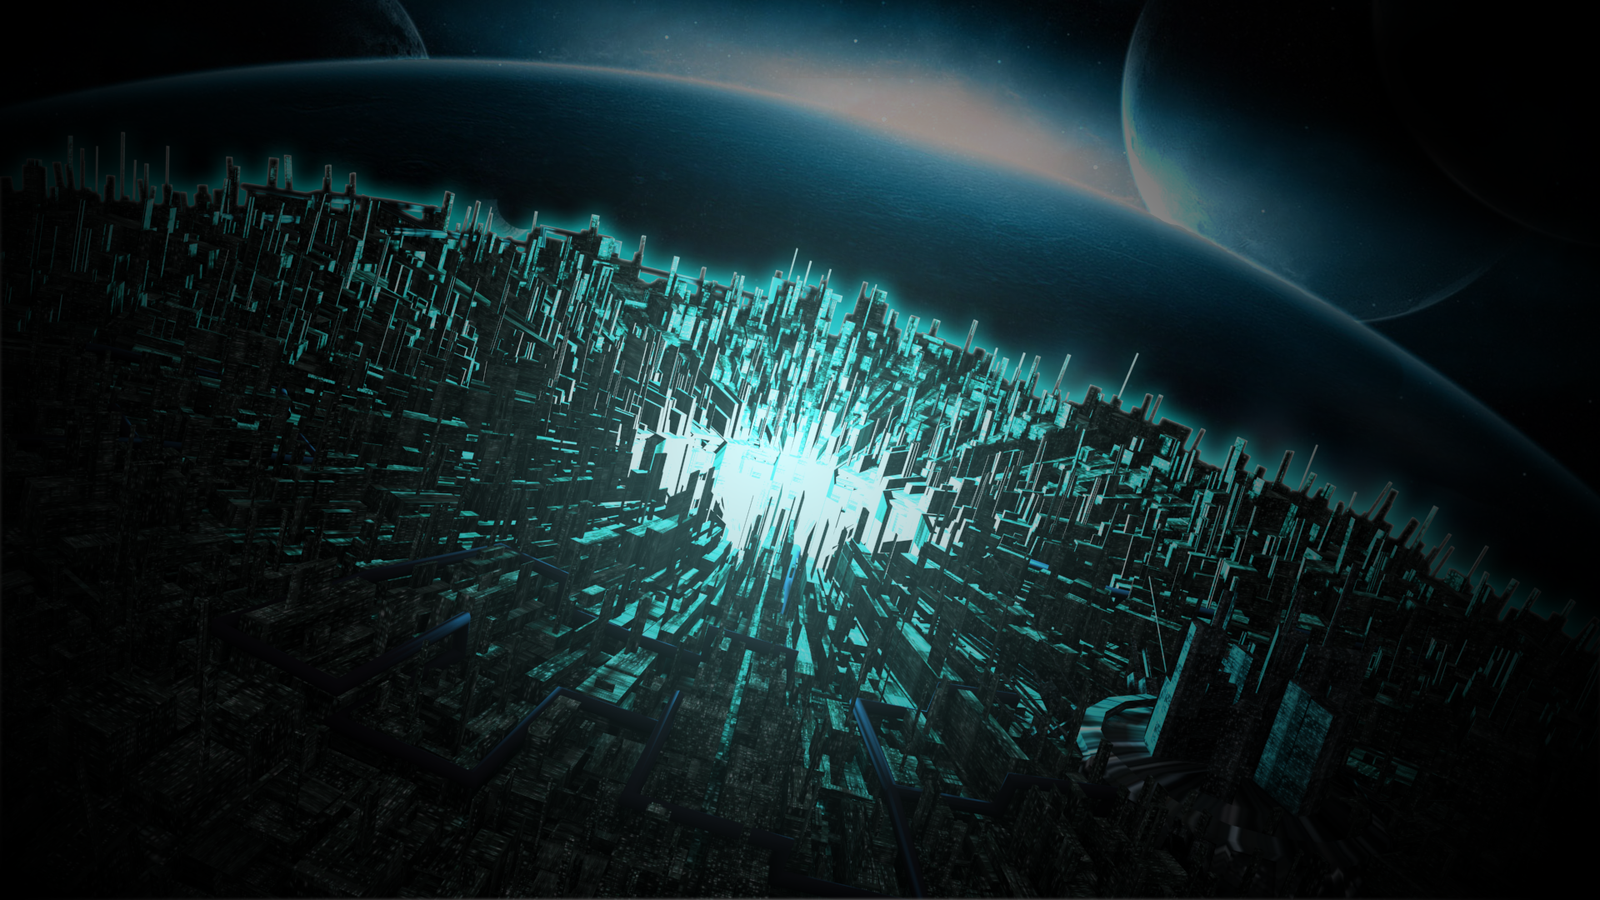 3D Futurist City Planet Wallpaper by NekoKawaii11 on DeviantArt